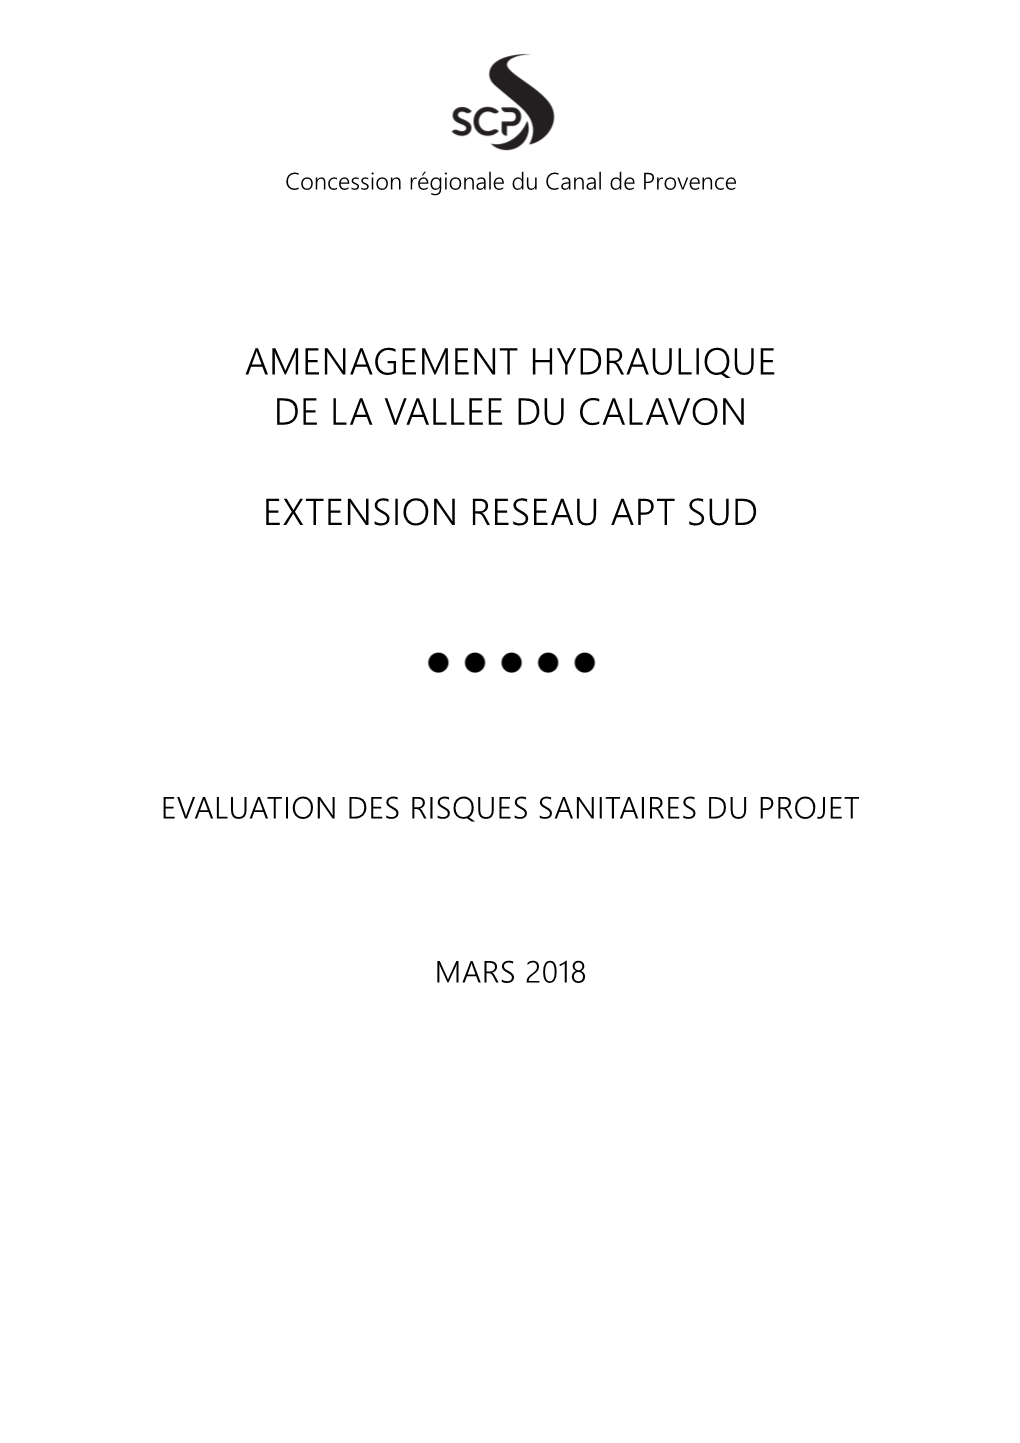 Amenagement Hydraulique De La Vallee Du Calavon Extension Reseau